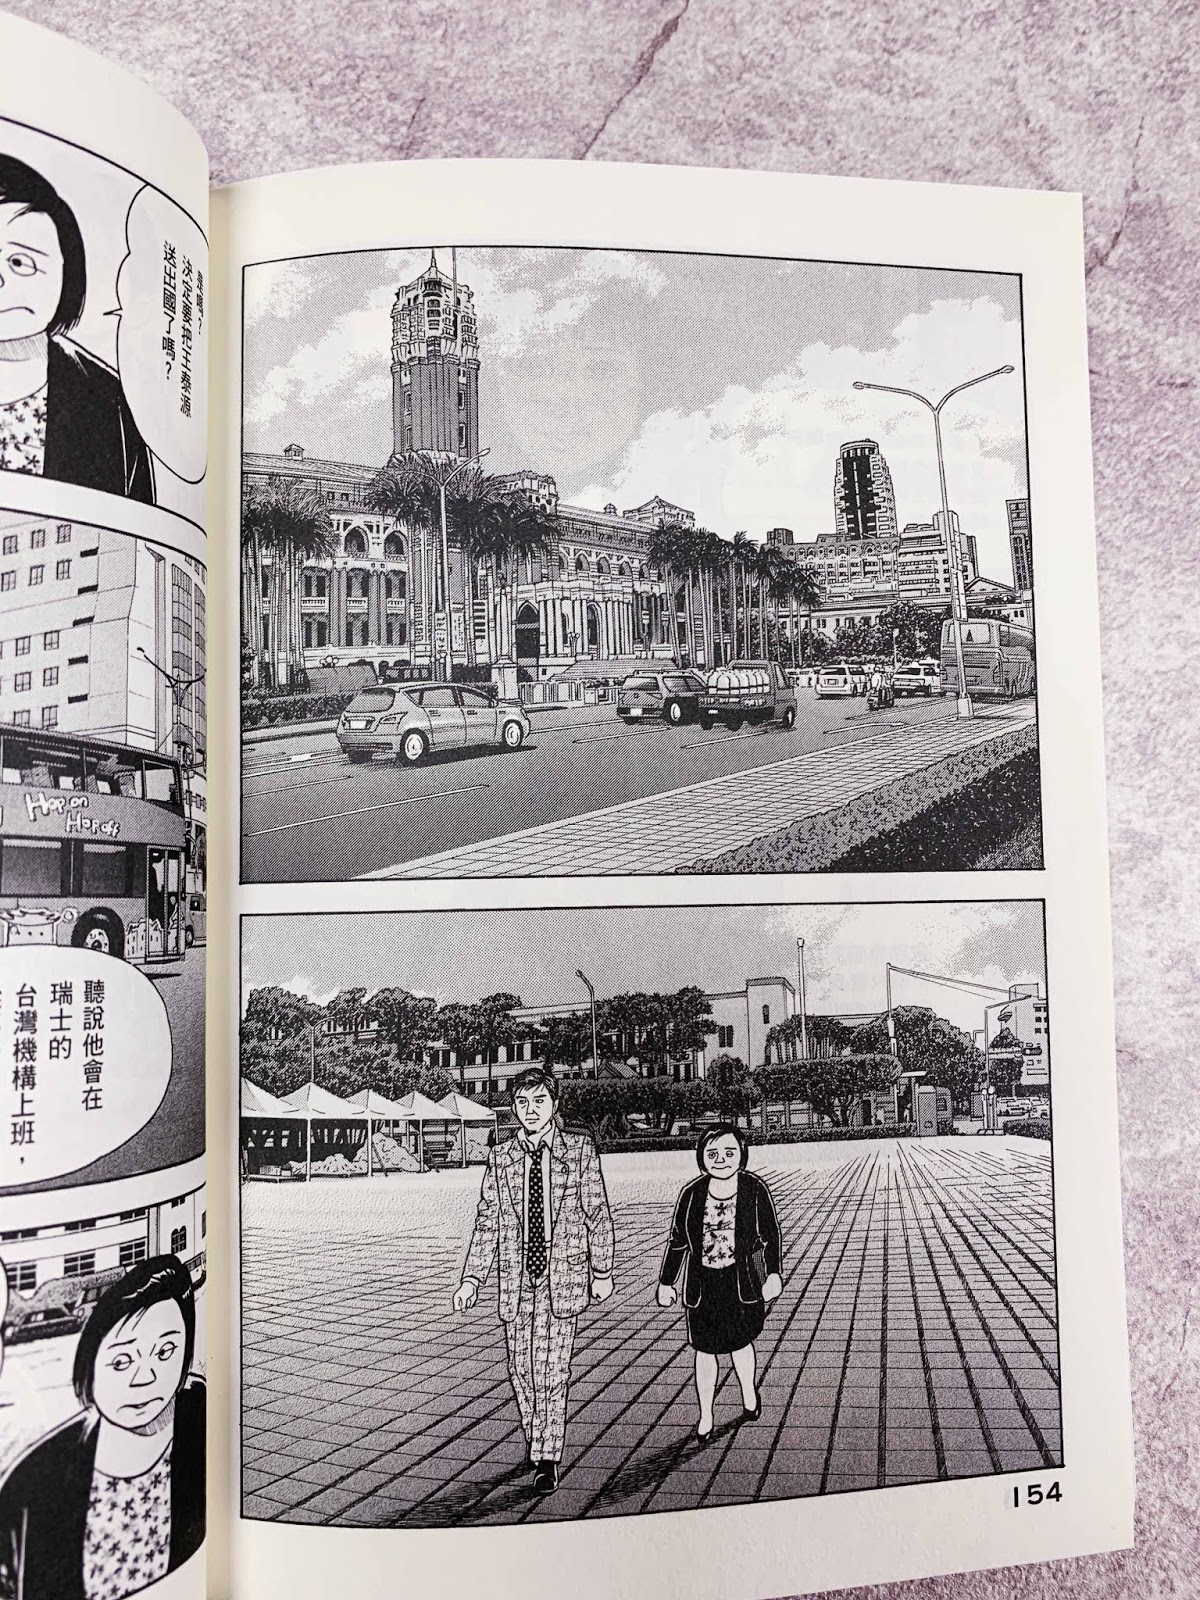 史上最 臺 日本漫畫 會長島耕作 從101畫到高鐵左營站 紀由屋 Kikyus